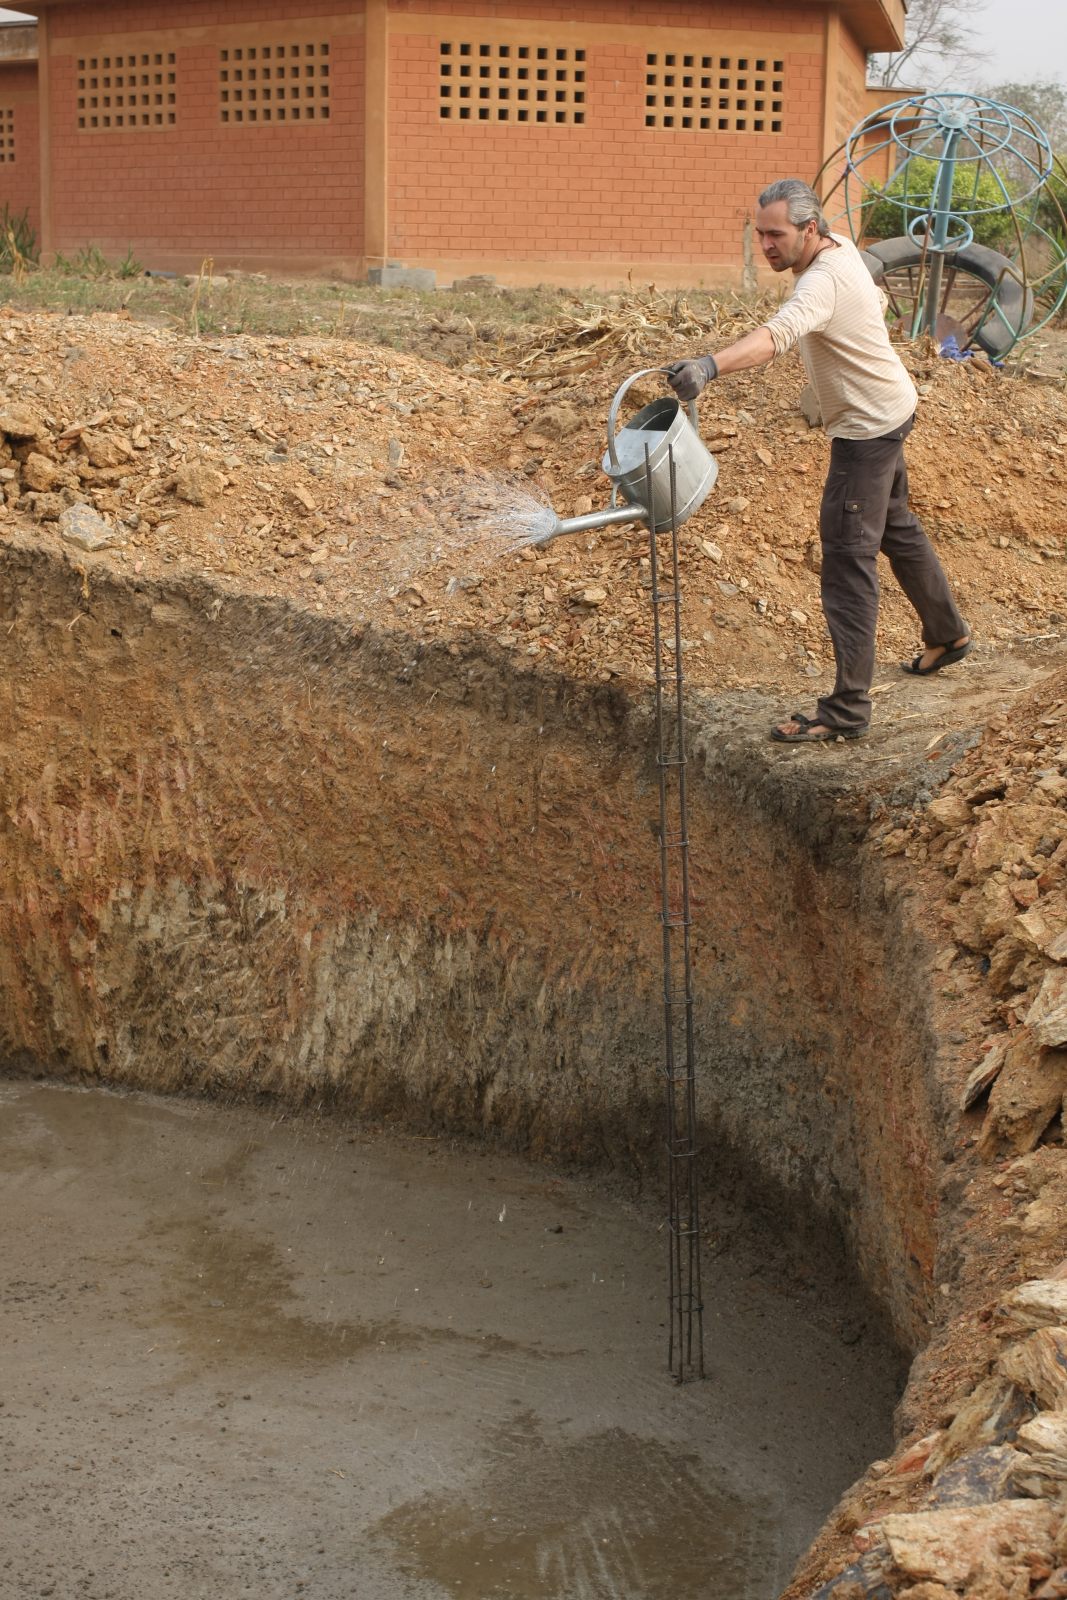 Der deutsche Ingenieur steht am Rand der Grube und gießt mit einer Kanne Wasser in dieselbe.